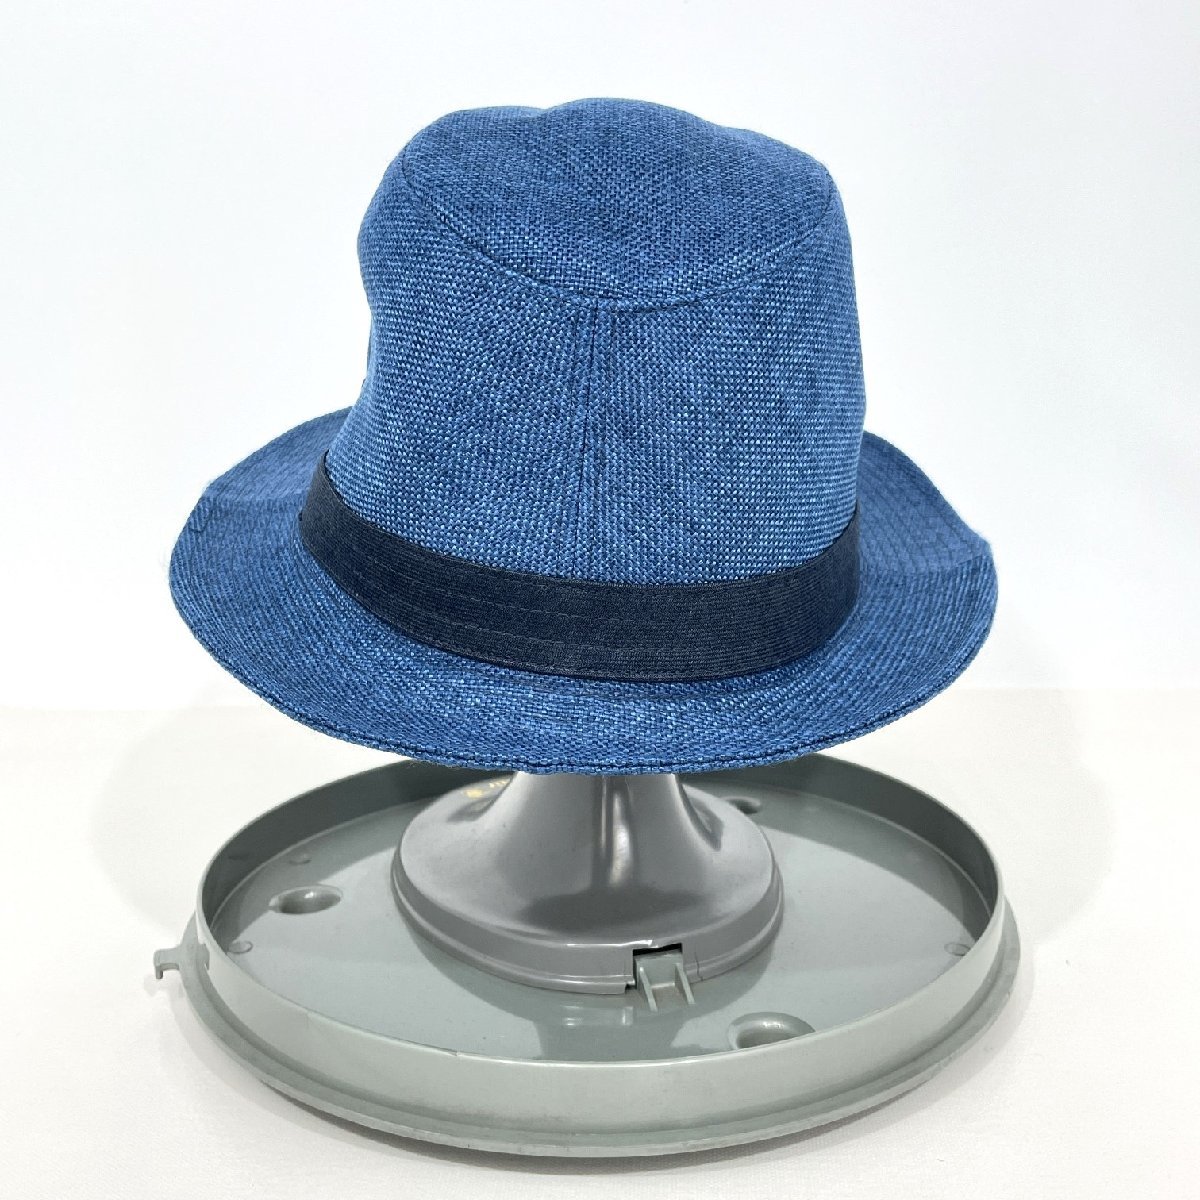 帽子屋 Flava Topin 60センチ ハット 夏物 ブルー 上品 青 紳士 男性 メンズ 帽子 Hat 【道楽札幌】の画像2